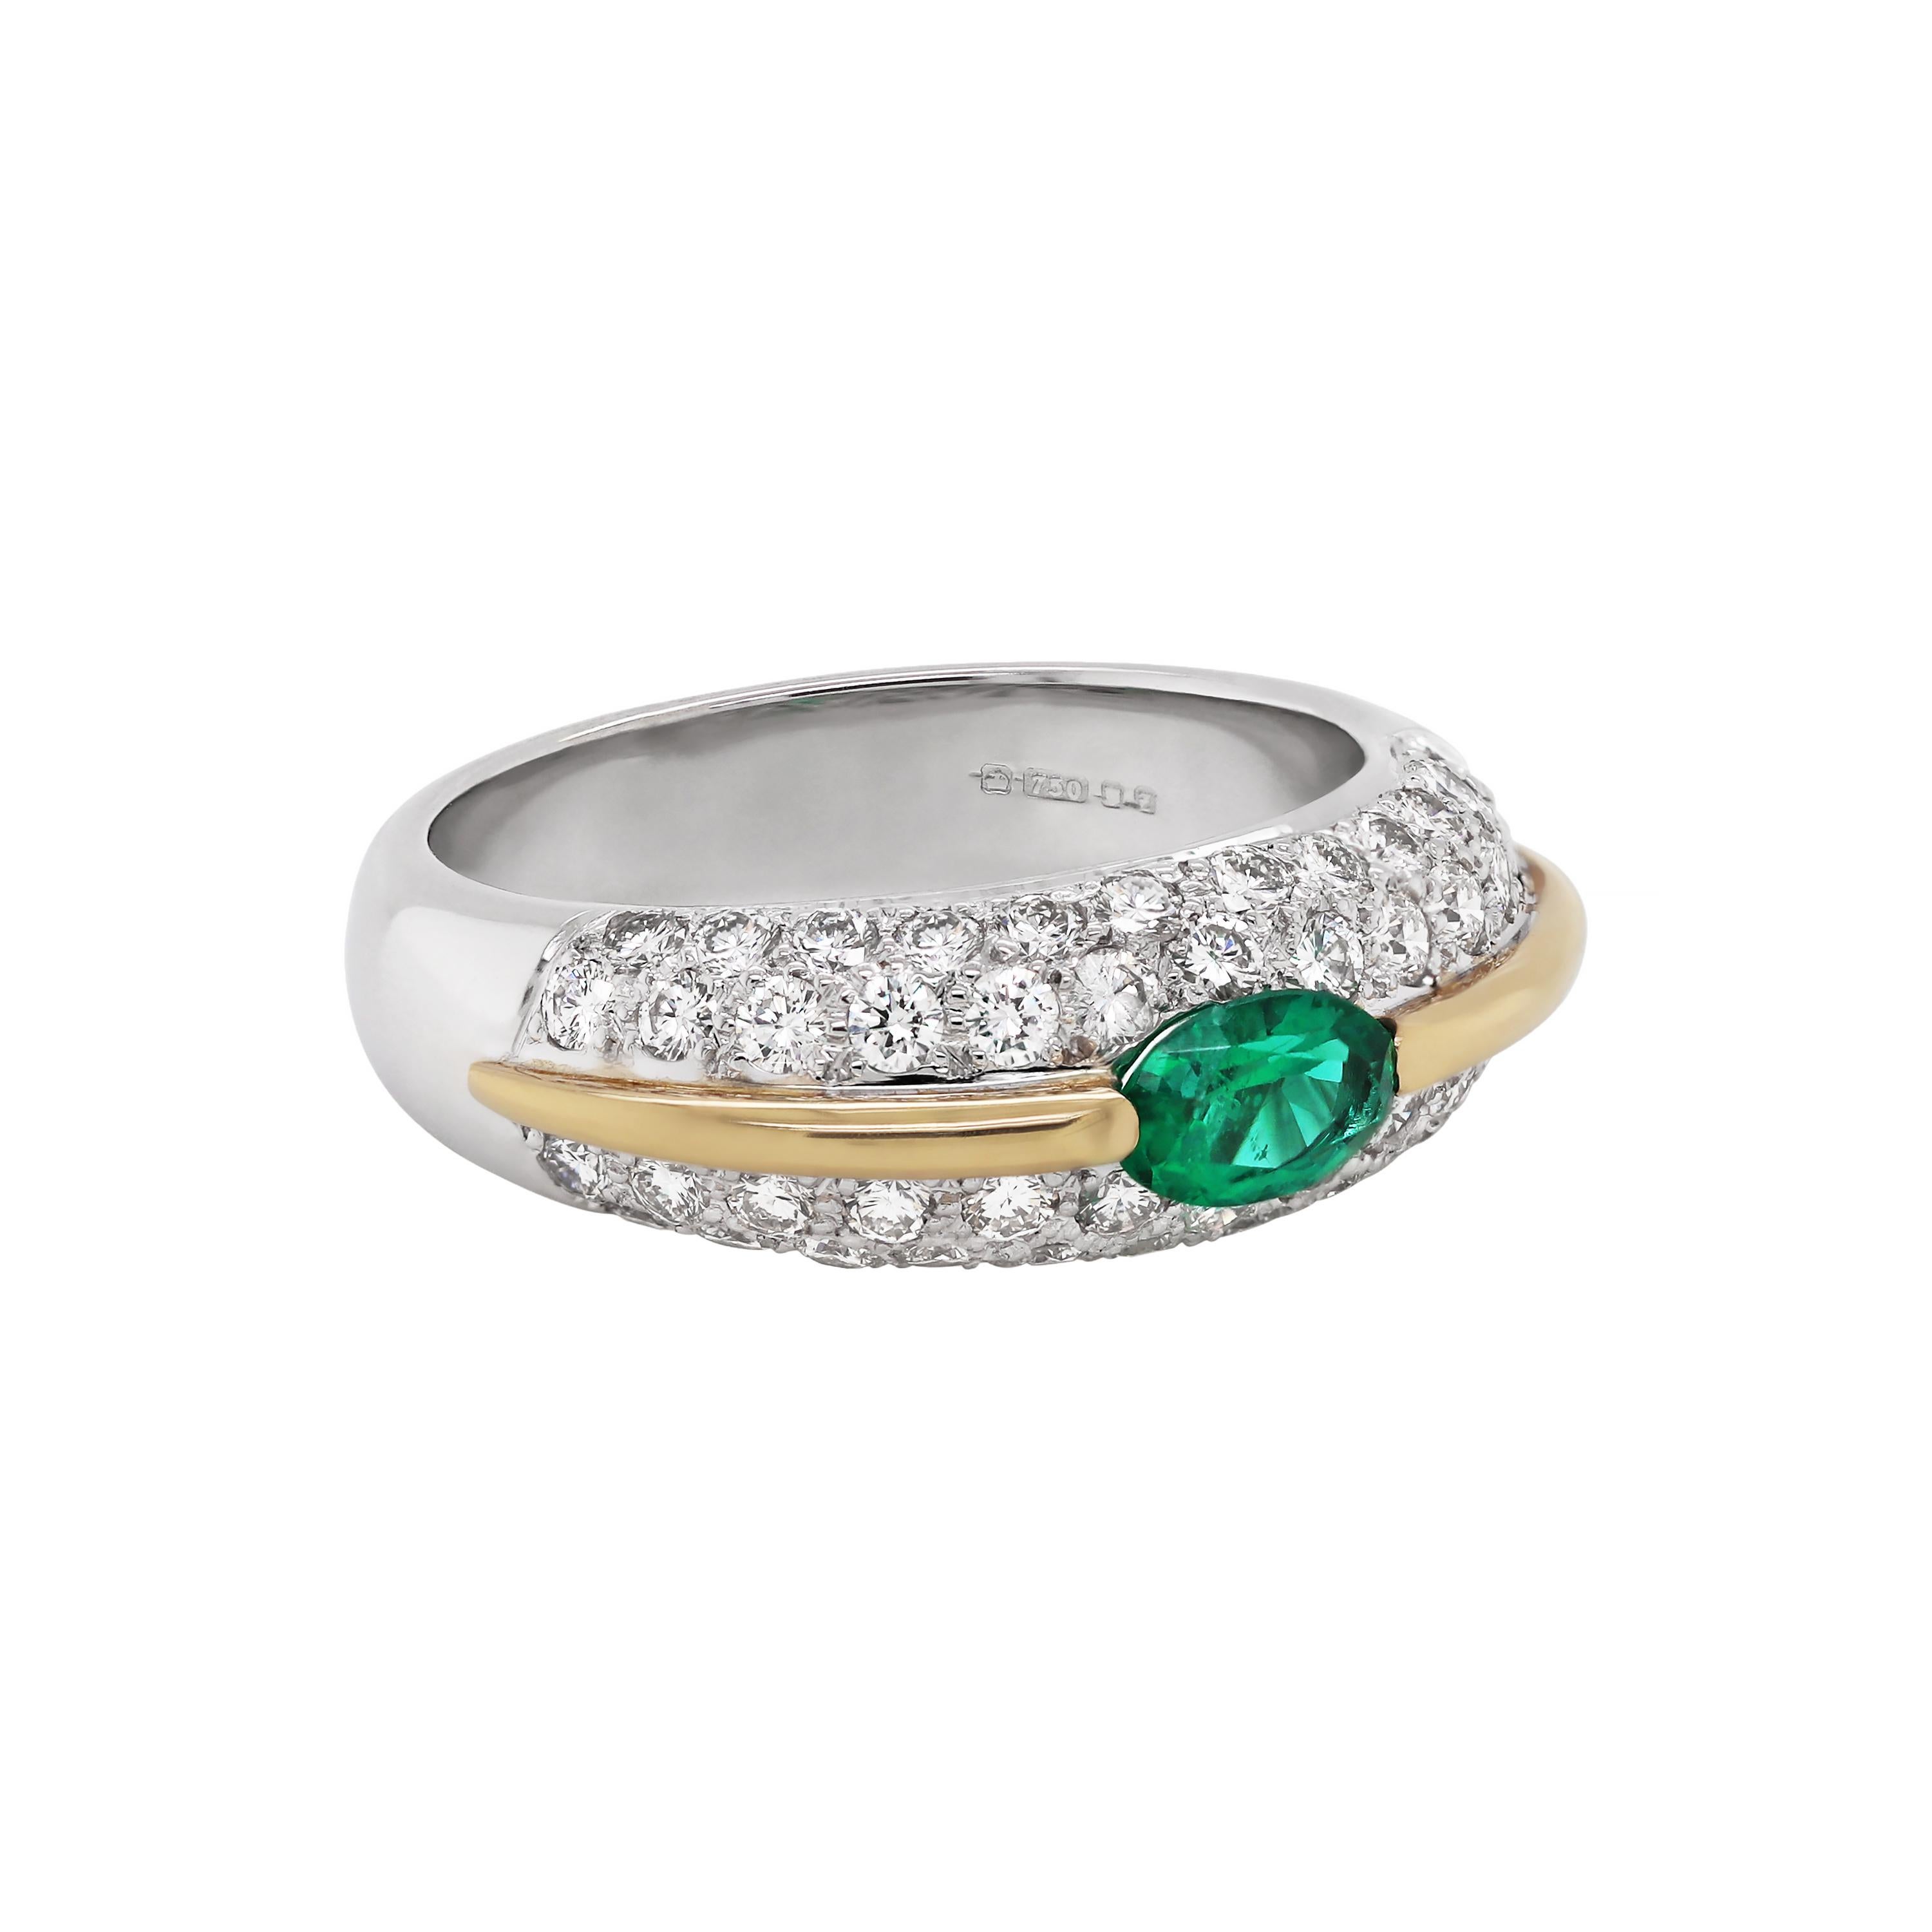 Dieser moderne kleine Bombé-Cluster-Ring zeigt einen ovalen Smaragd von 0,35 Karat in der Mitte einer diamantbesetzten Fassung. Der Ring ist wunderschön gestaltet mit einem kontrastierenden 18 Karat Gelbgold teilen, setzen zwei Reihen von runden